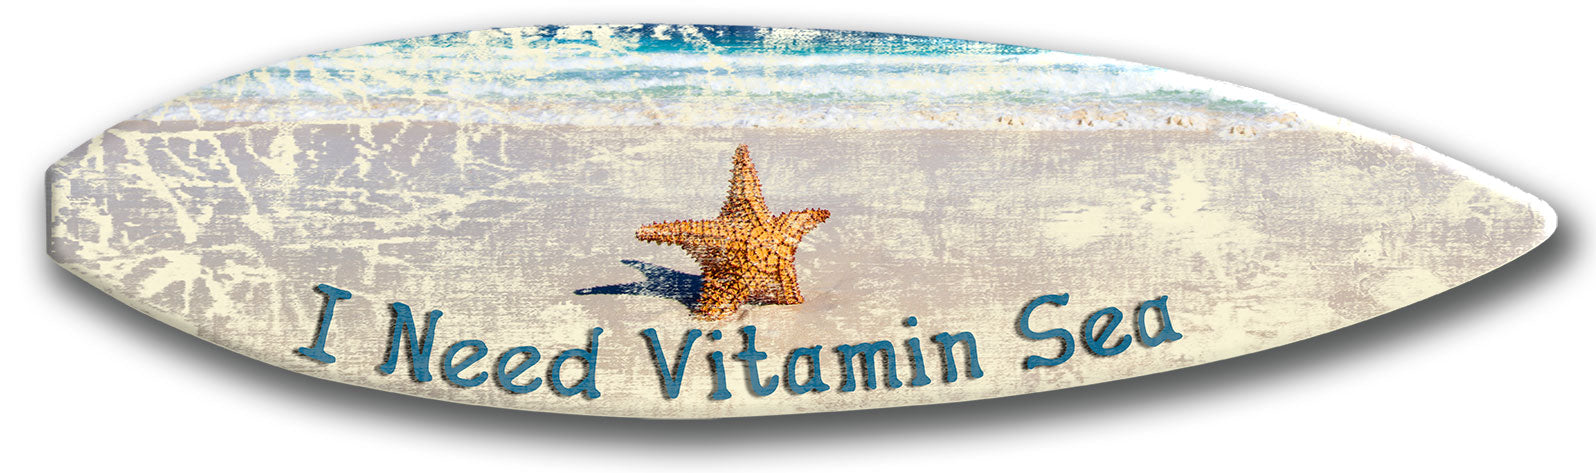 Need Vitamin Sea Surf Board Wood Print Vintage Sign